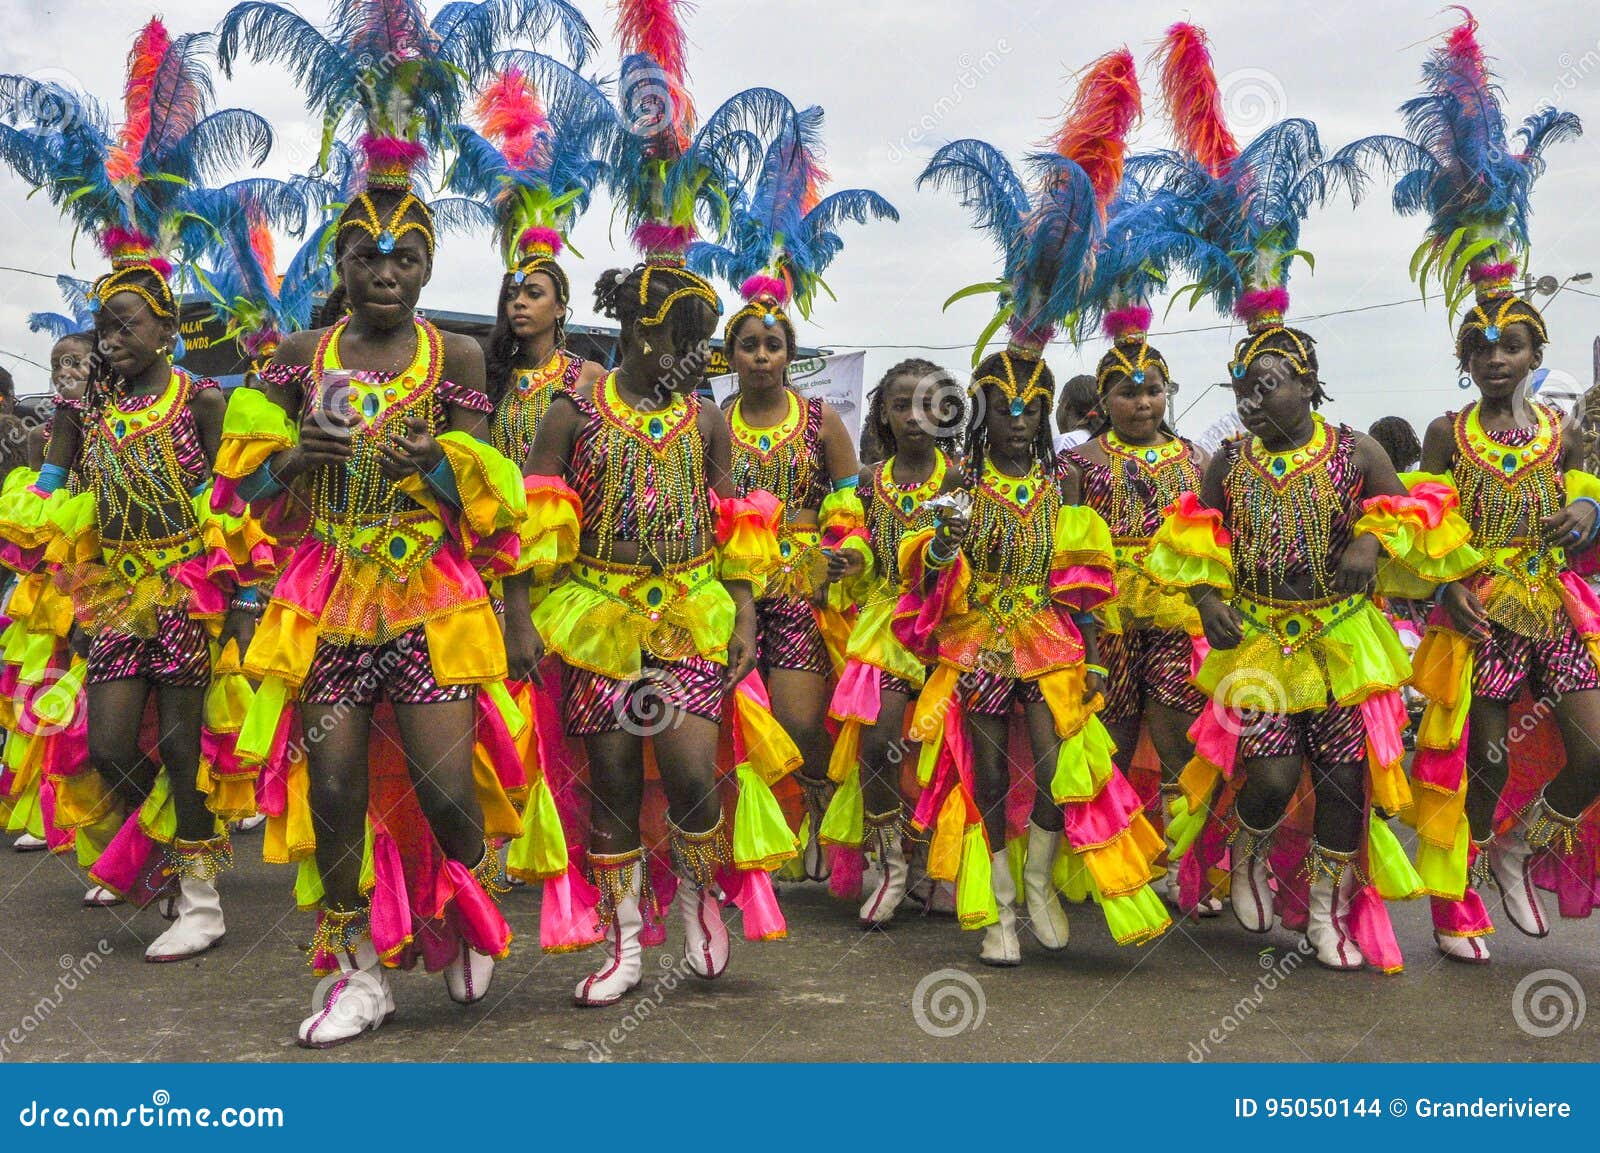 And girls trinidad tobago Trinidad Women